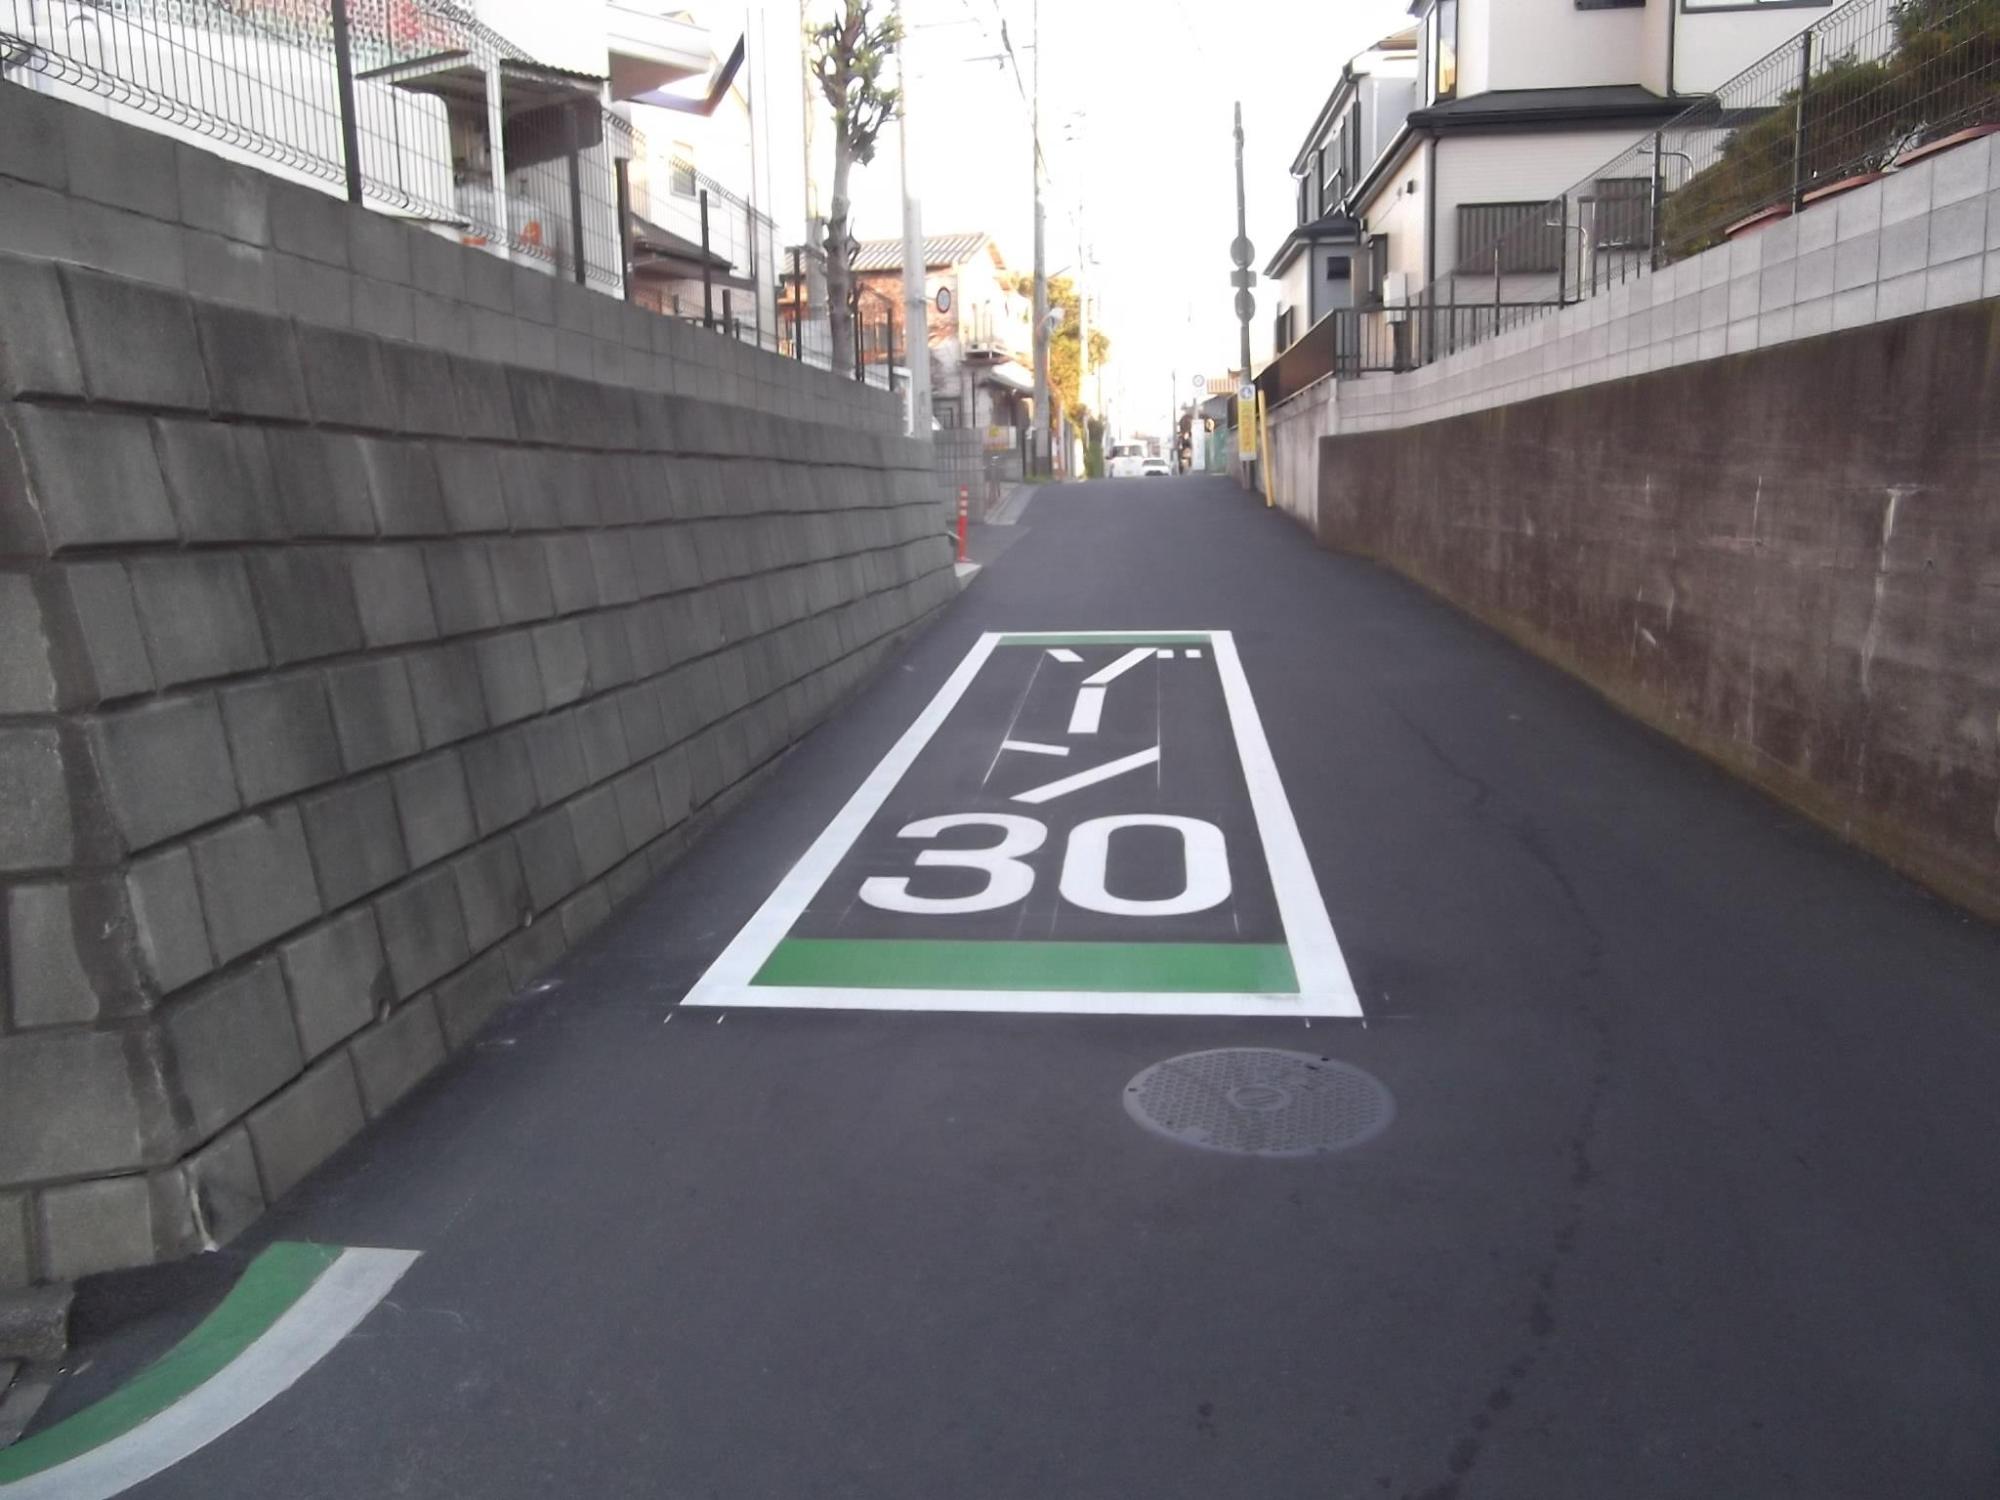 ふじみ野市で区域規制「ゾーン30」による交通安全対策施工後に「ゾーン30」の文字が設置された舗装道路の画像